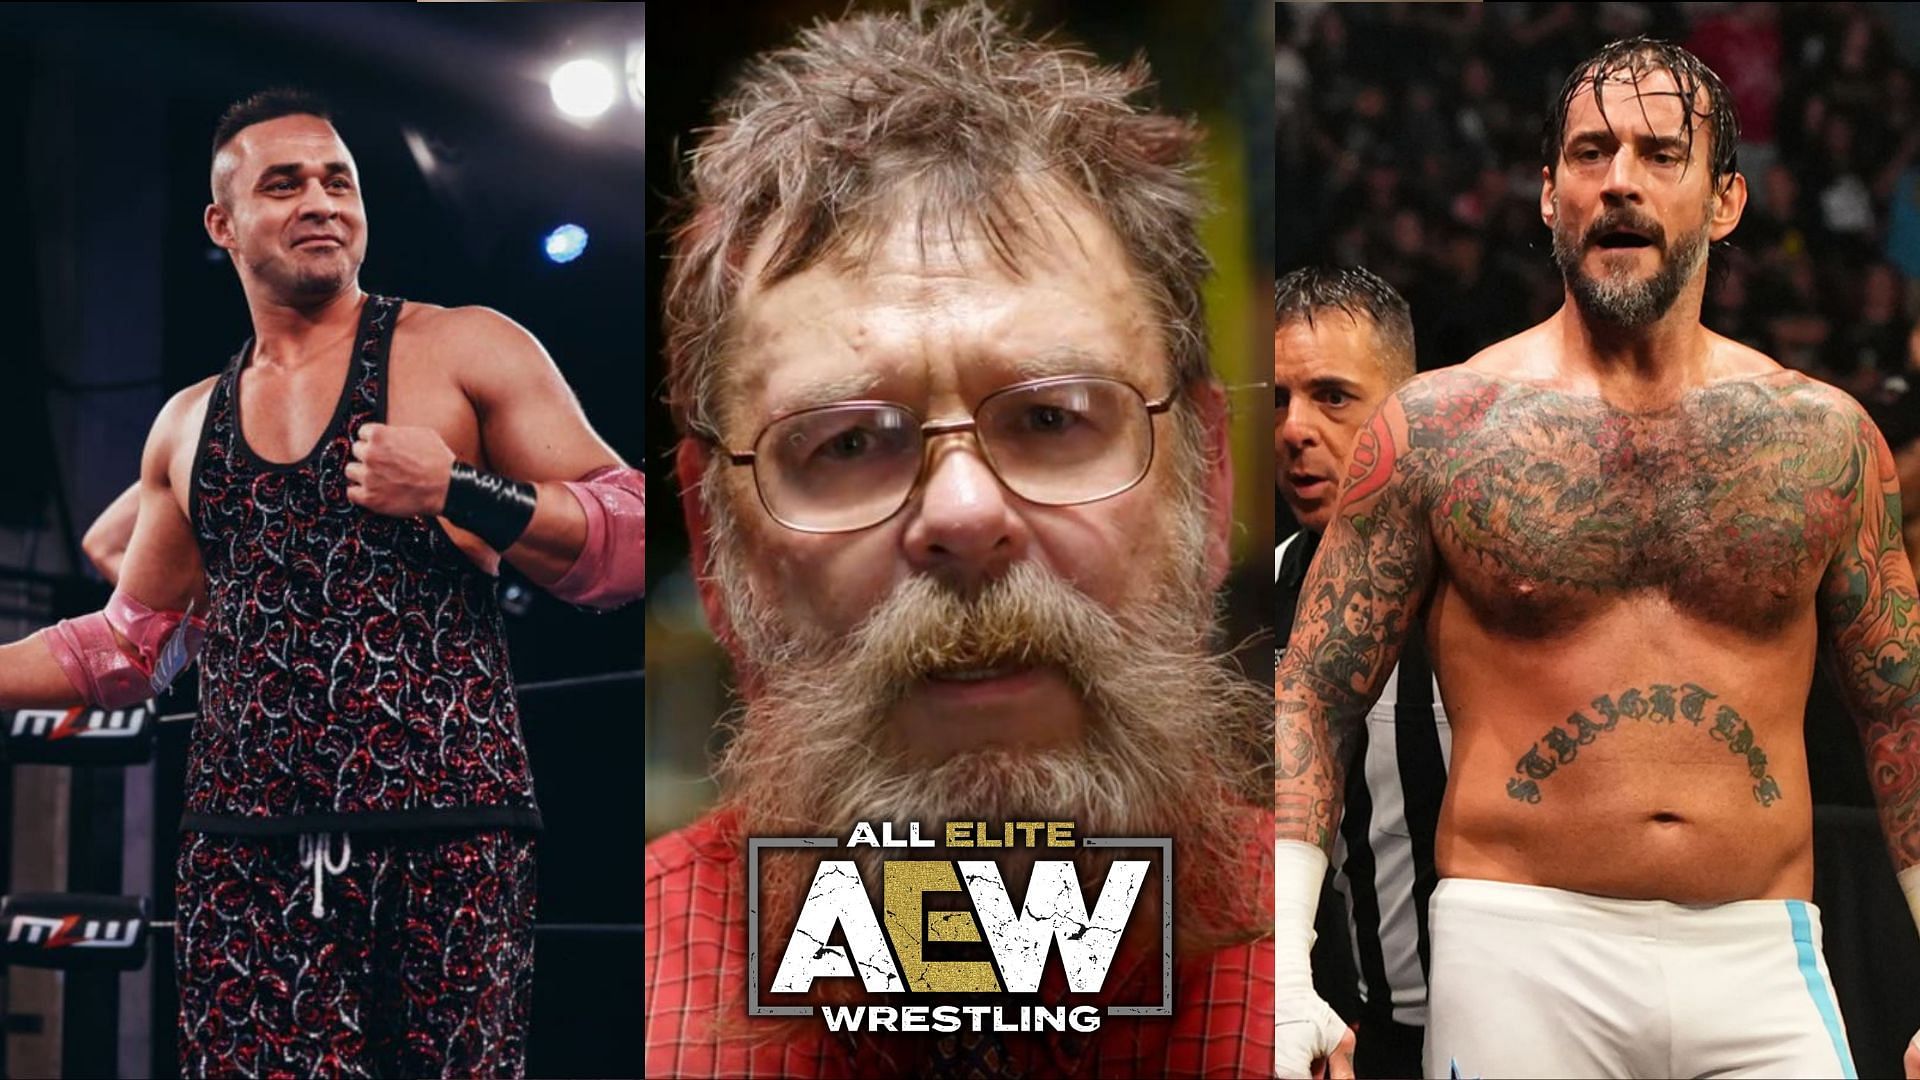 Nederlandse Montel herinnert zich Backstage Brawl tussen CM Punk en Teddy Hart in het licht van AEW-problemen (exclusief)